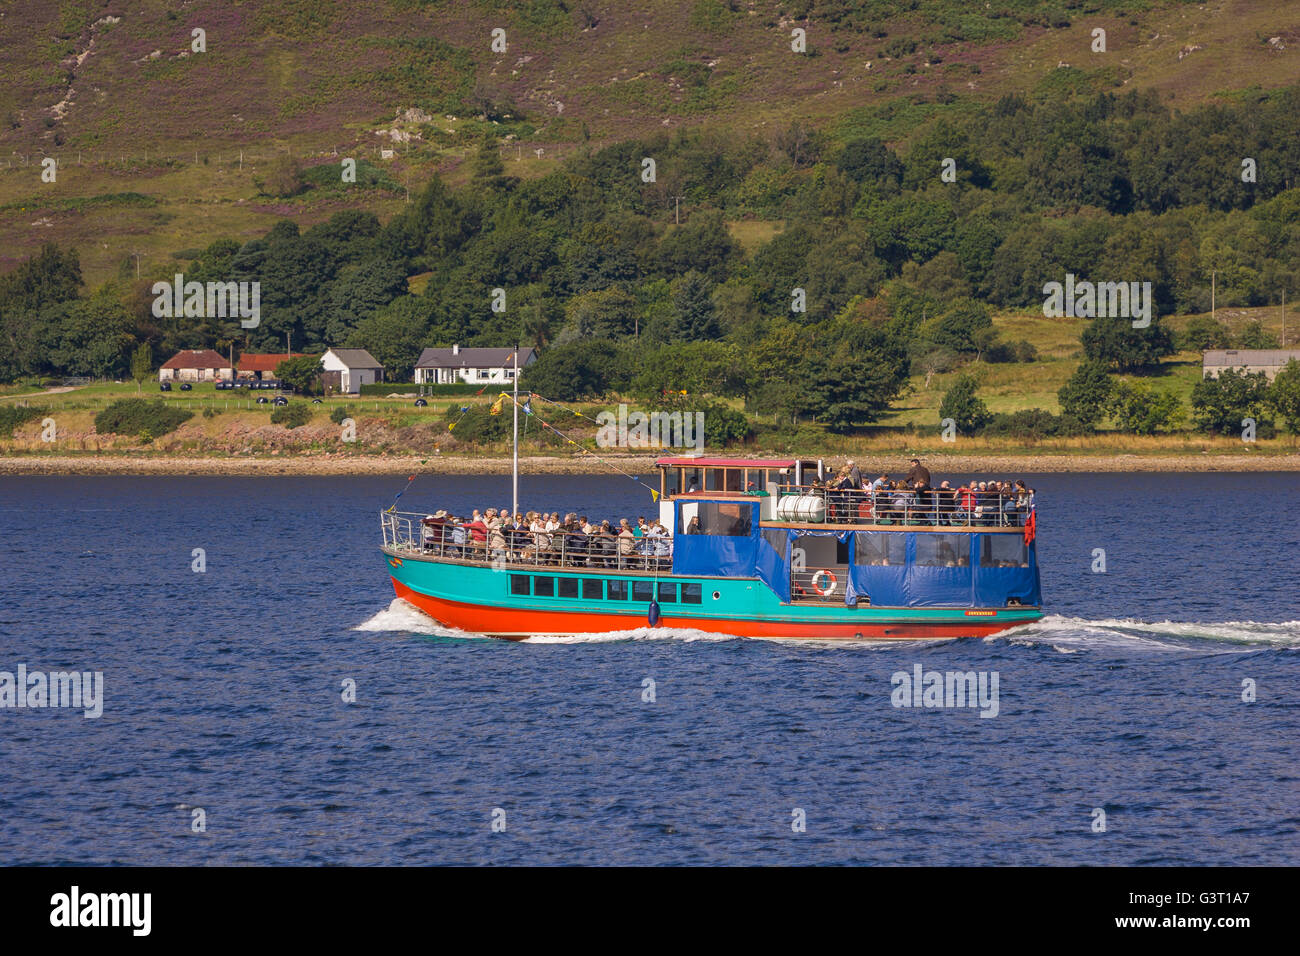 FORT William Scozia - La barca turistica sul viaggio sul Loch Linnhe. Foto Stock